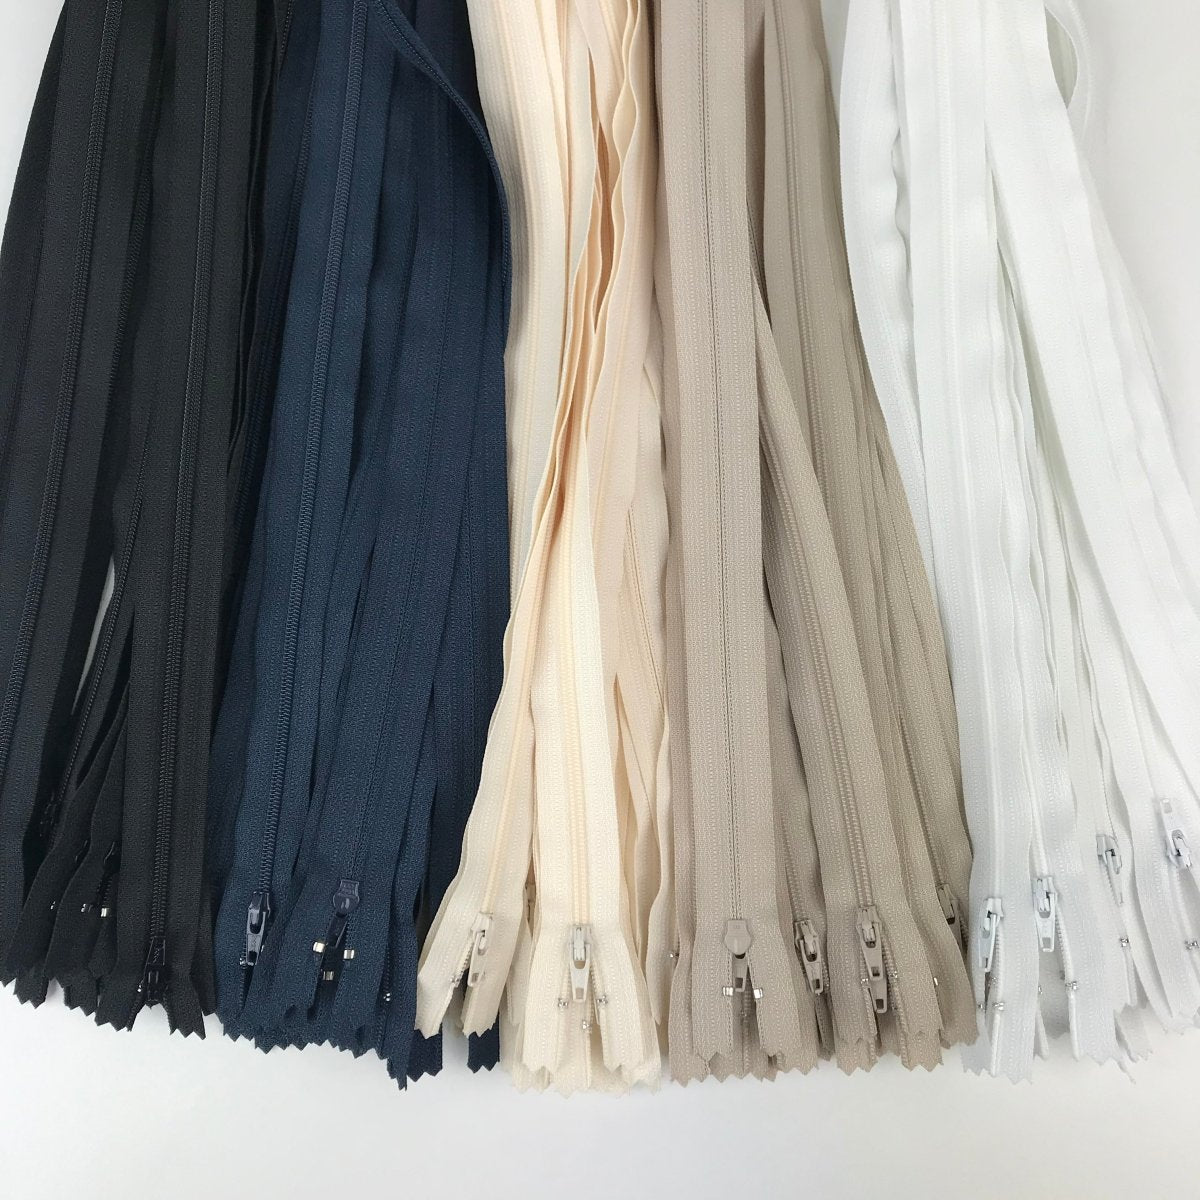 YKK Zipper - Skirt and Dress - 30.5cm (12") - Sewing Gem